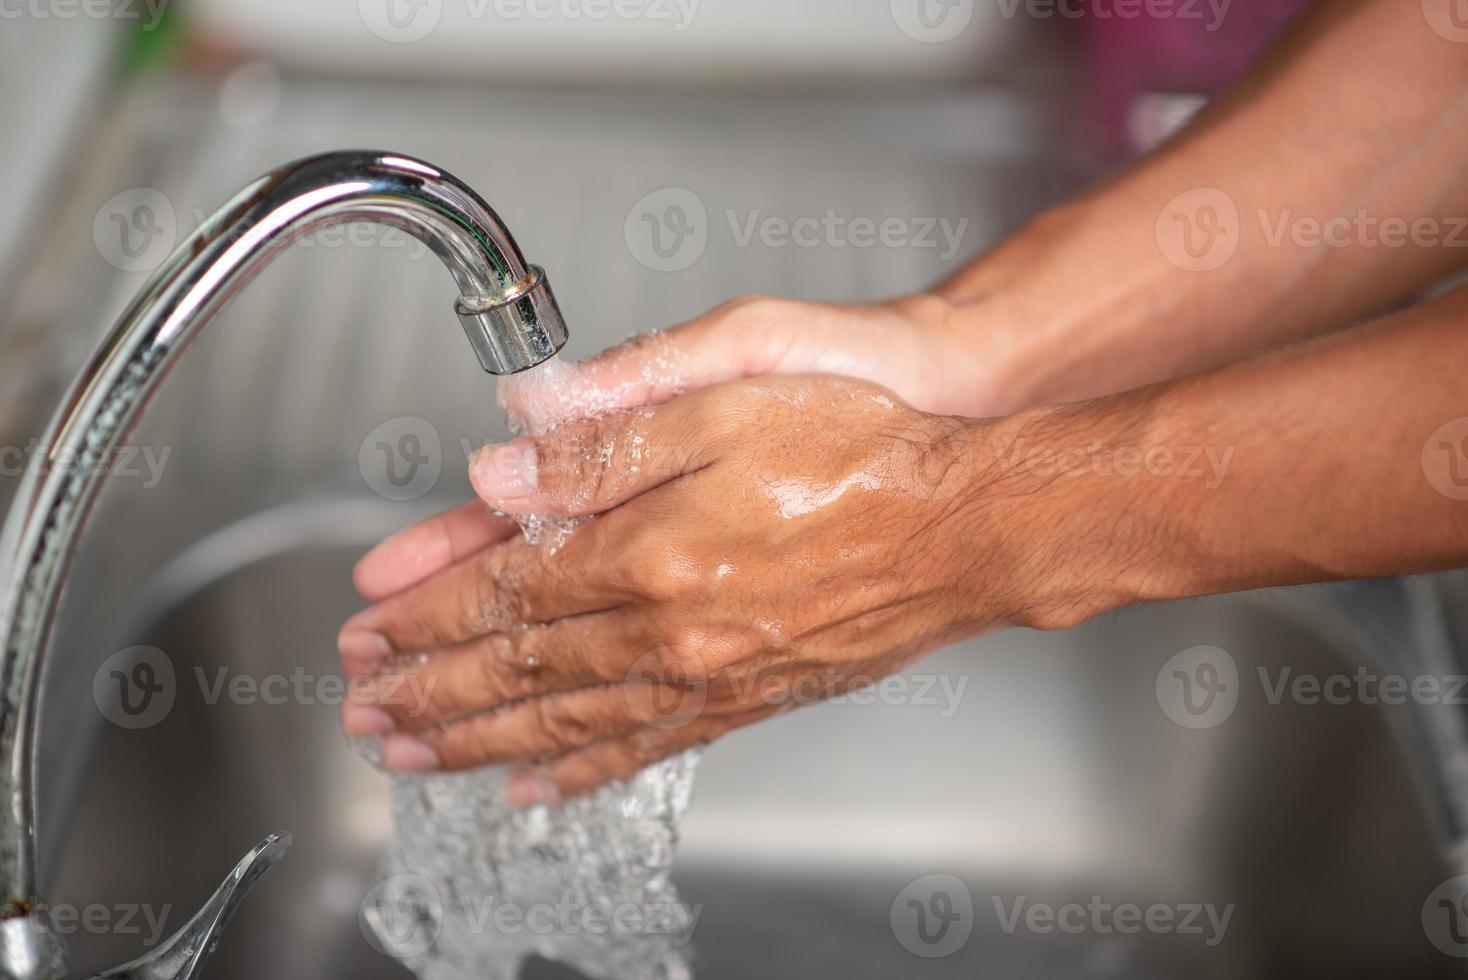 as mãos dos homens estão mostrando maneiras de lavar as mãos com um gel de limpeza para prevenir doenças infecciosas e prevenir o vírus. foto